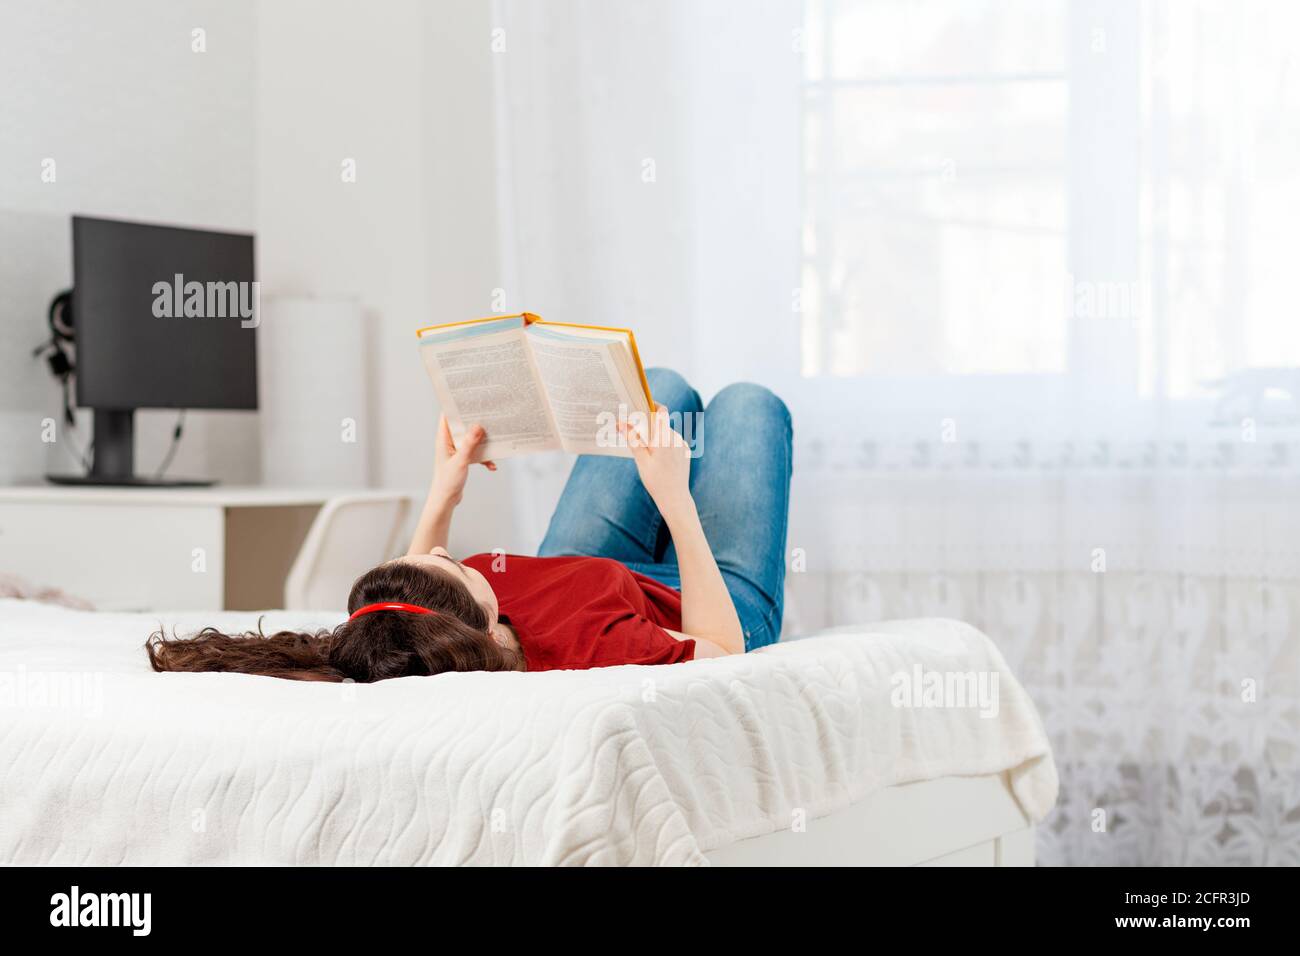 Eine junge kaukasische Frau liegt auf dem Bett auf ihrem Rücken und liest ein Buch. Speicherplatz kopieren. Weißer Innenraum des Raumes auf dem Hintergrund. Konzept der Bildung Stockfoto